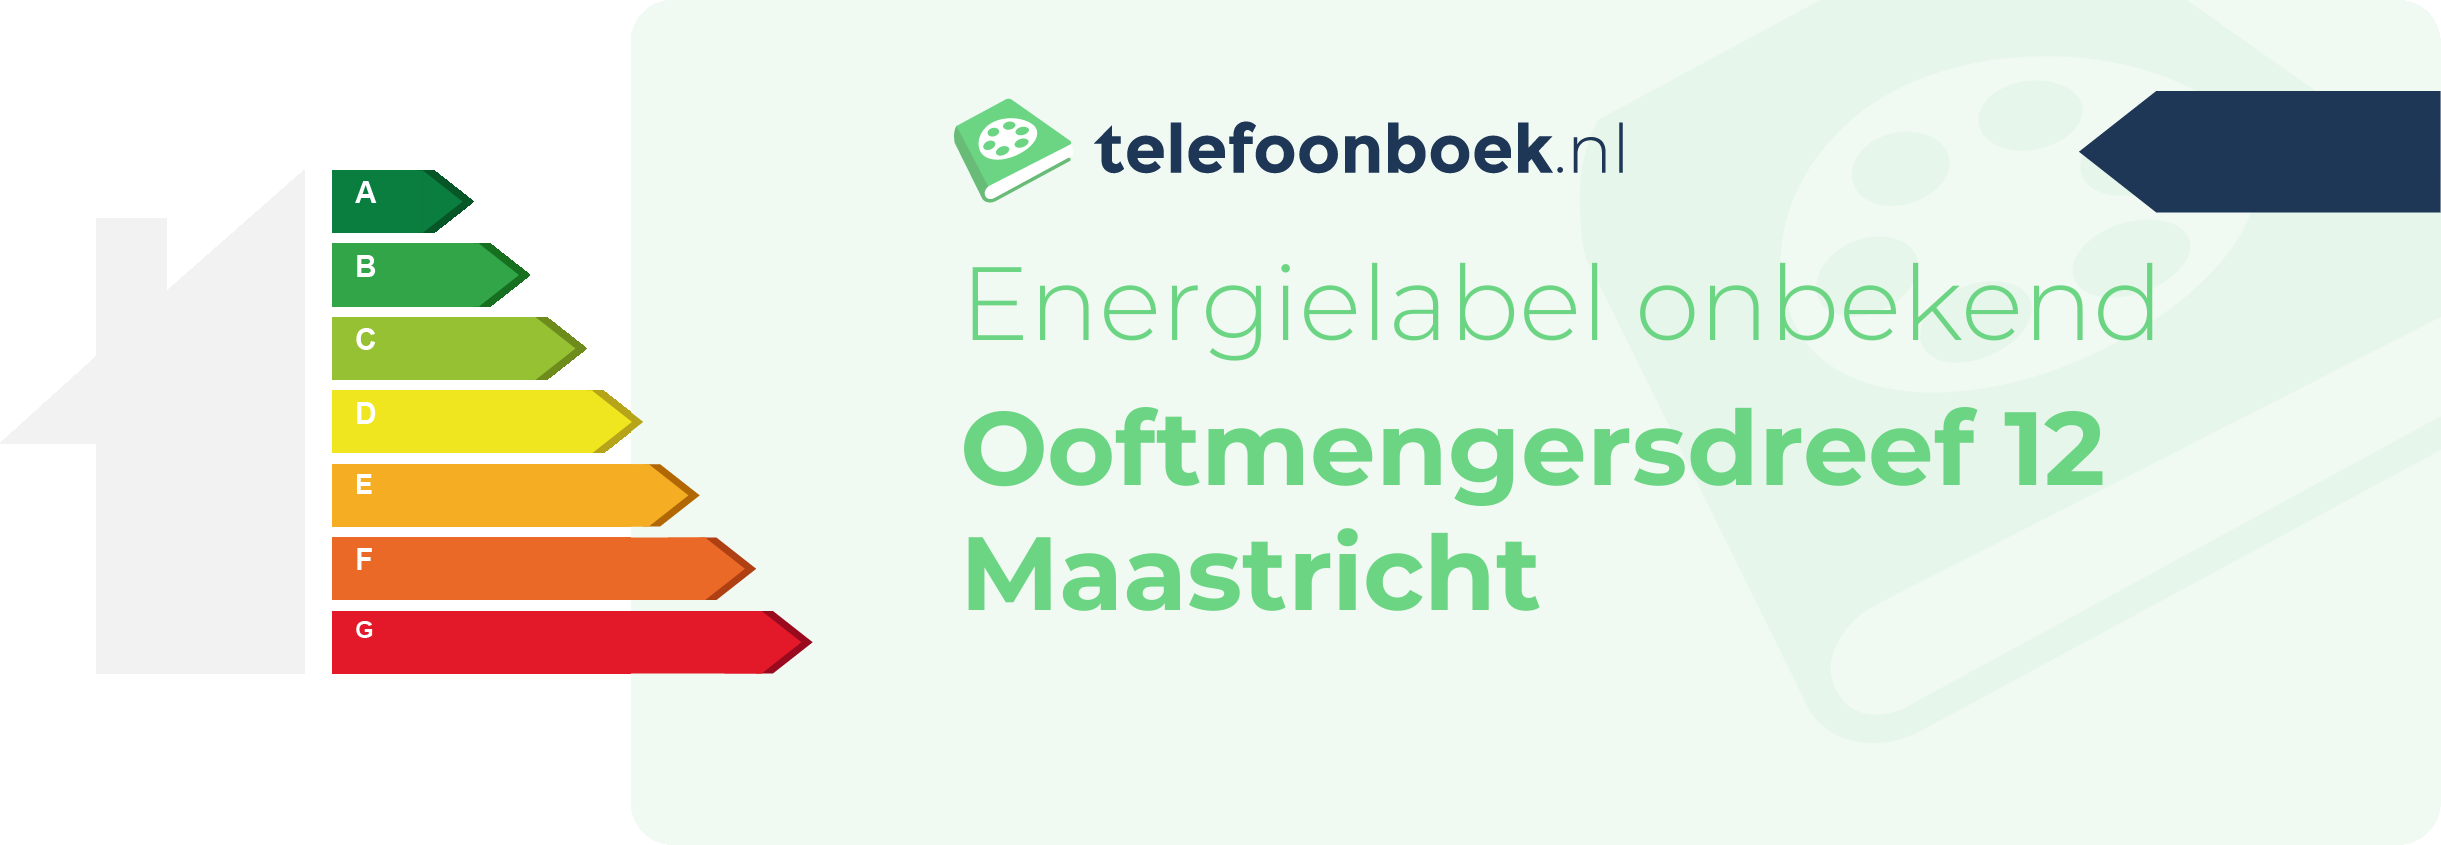 Energielabel Ooftmengersdreef 12 Maastricht